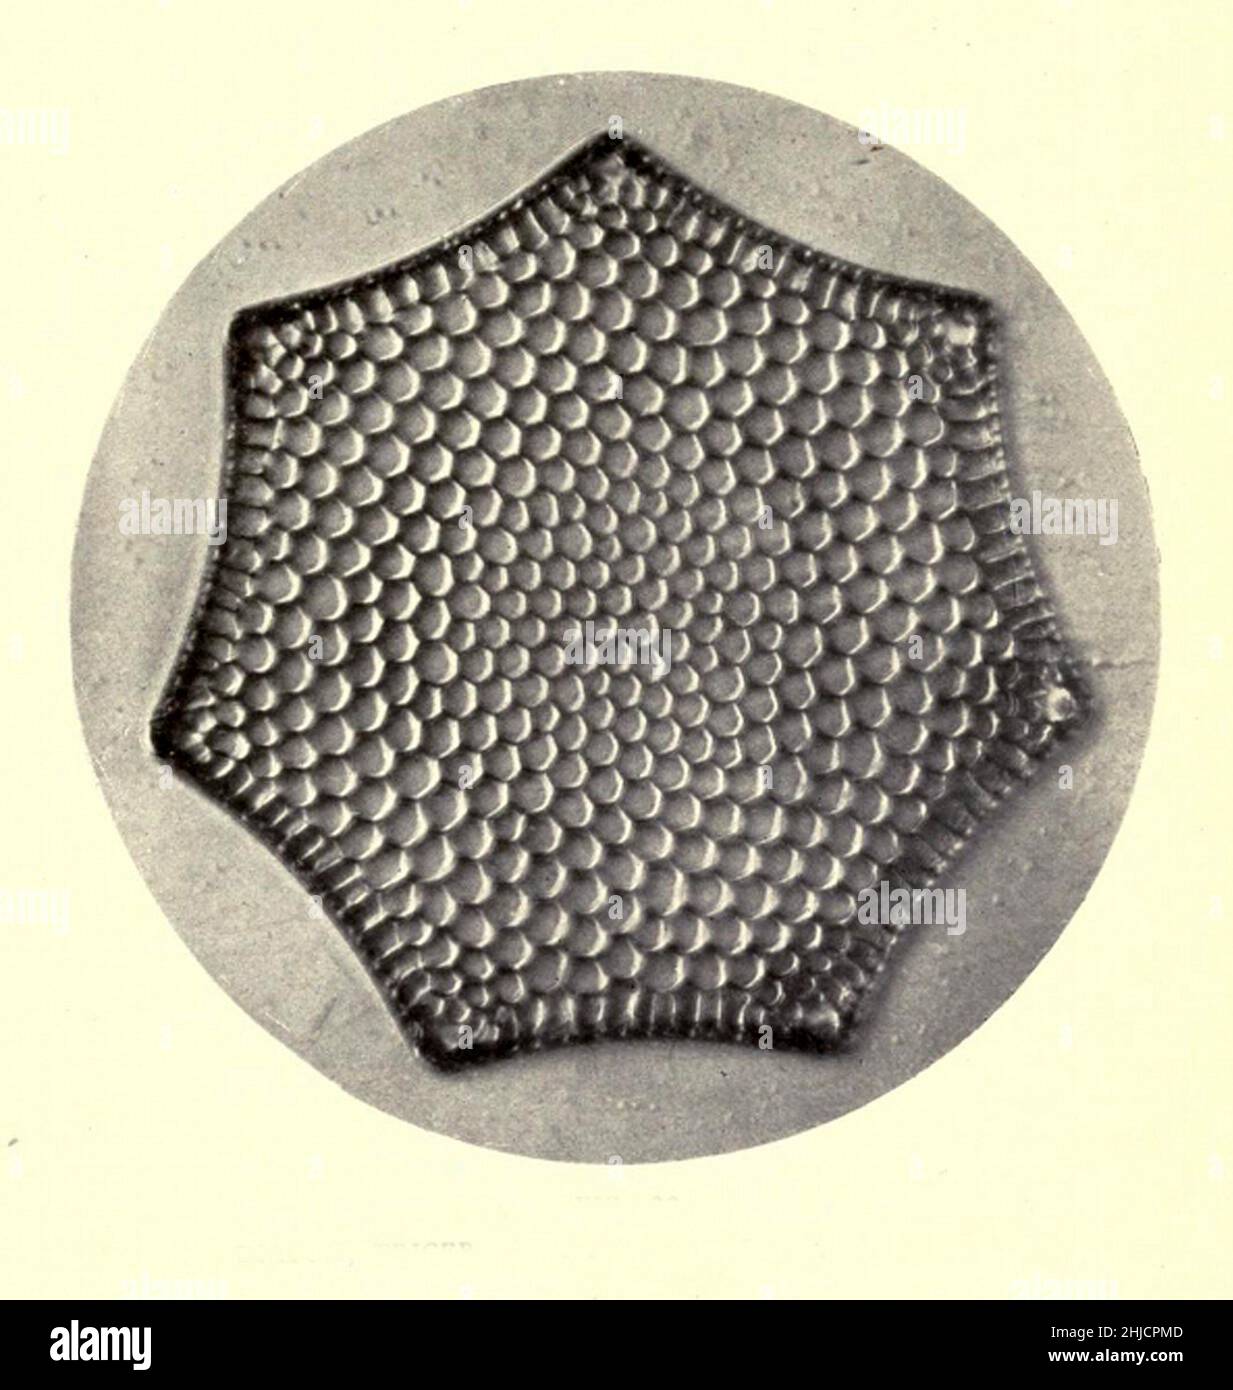 Diatomea, Triceratium favus, Var. Septangulatum. Ampliación: 280x. Fotomicrografía realizada por Arthur E Smith a principios de 1900, utilizando un microscopio y una cámara combinados. En 1904, la Royal Society de Londres exhibió al público una serie de fotomicrografías de Smith. Más tarde fueron publicados en 1909 en un libro llamado 'Nature Through Microscope & Camera'. Fueron los primeros ejemplos de fotomicroscopía que muchos habían visto. Foto de stock